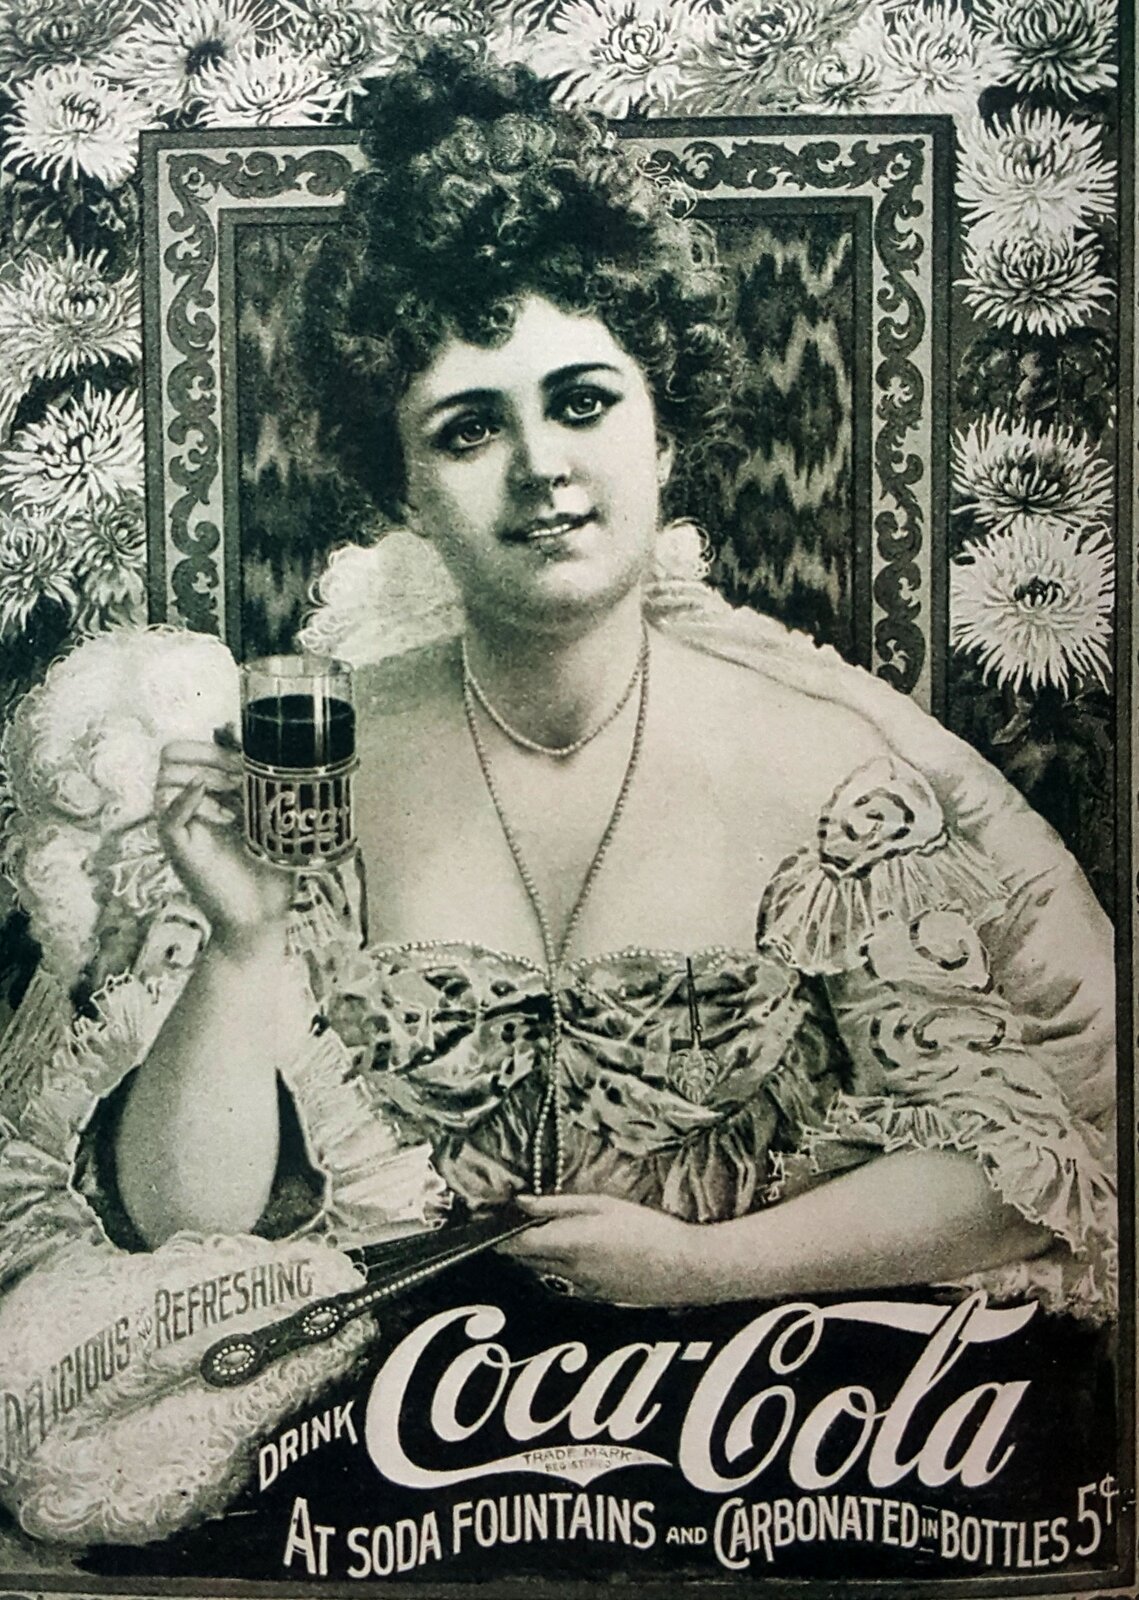 Fotografia przedstawiająca plakat reklamujący coca-colę z początku XX wieku. Kobieta w koku i eleganckiej sukience trzyma w prawej dłoni filiżankę od herbaty, w której znajduje się napój coca-cola. W dole ilustracji widnieje napis "Drink Coca-cola at soda fountains and carbonated in bottles". Zdjęcie jest czarno - białe.